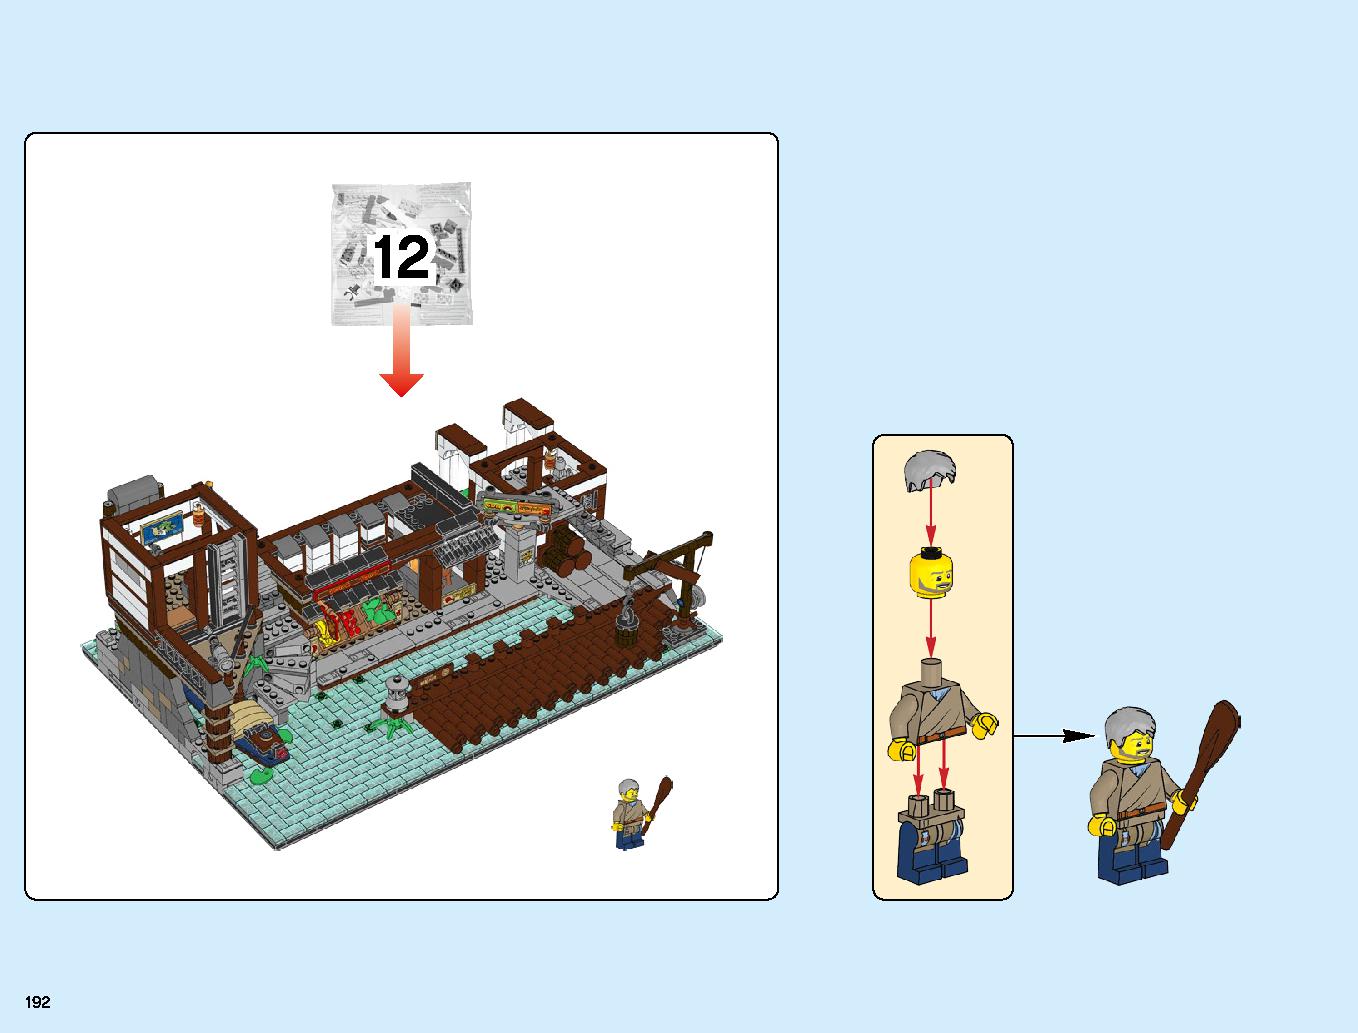 ニンジャゴーシティ・ポートパーク 70657 レゴの商品情報 レゴの説明書・組立方法 192 page